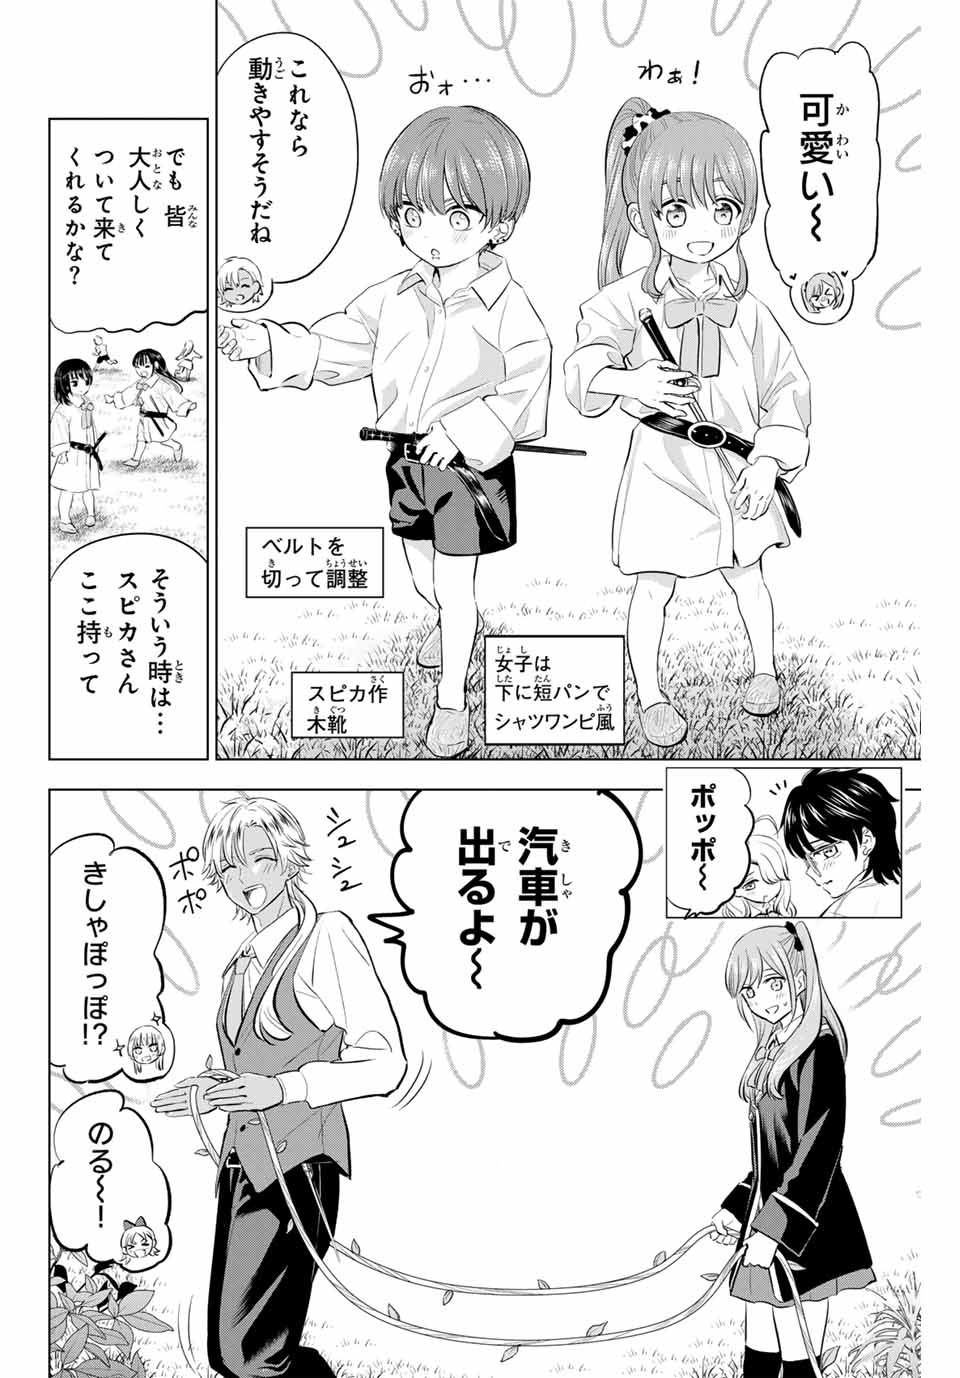 Kuroneko to Majo no Kyoushitsu - Chapter 63 - Page 8